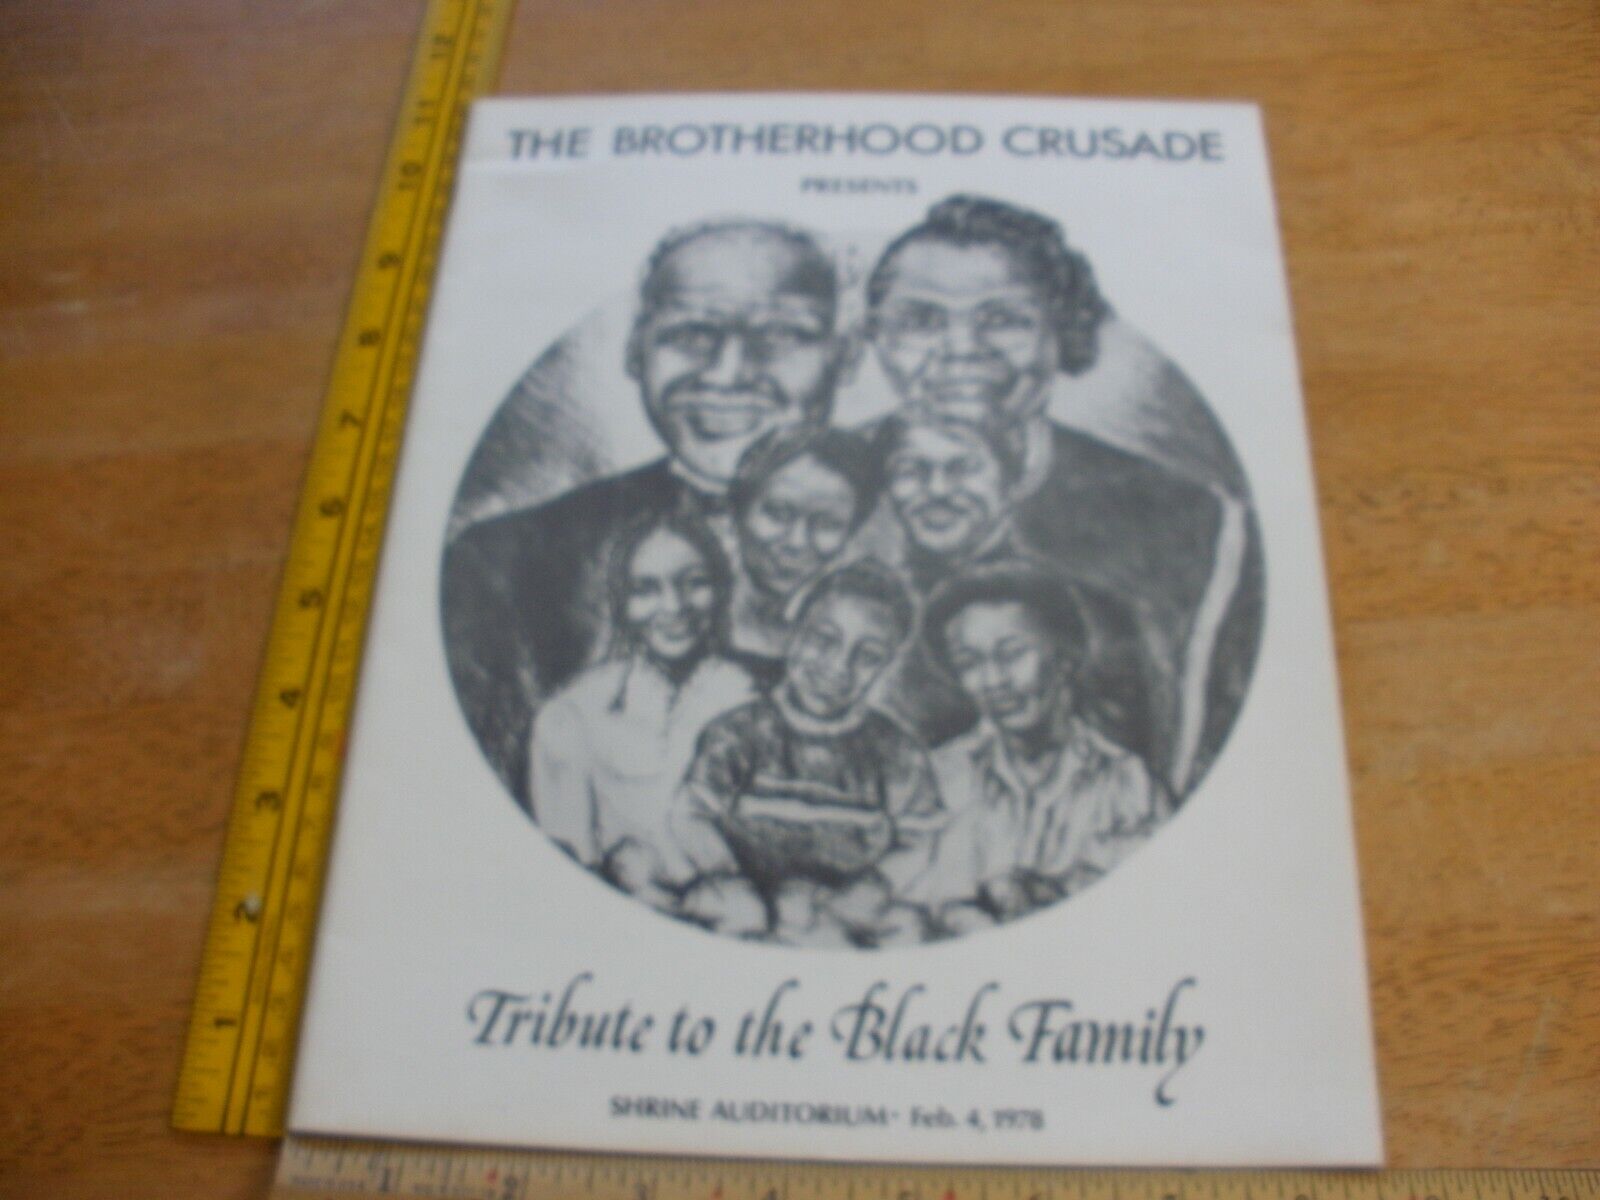 Louis Gossett Jr.Brotherhood Crusade 1978 for Black Family program Richard Pryor